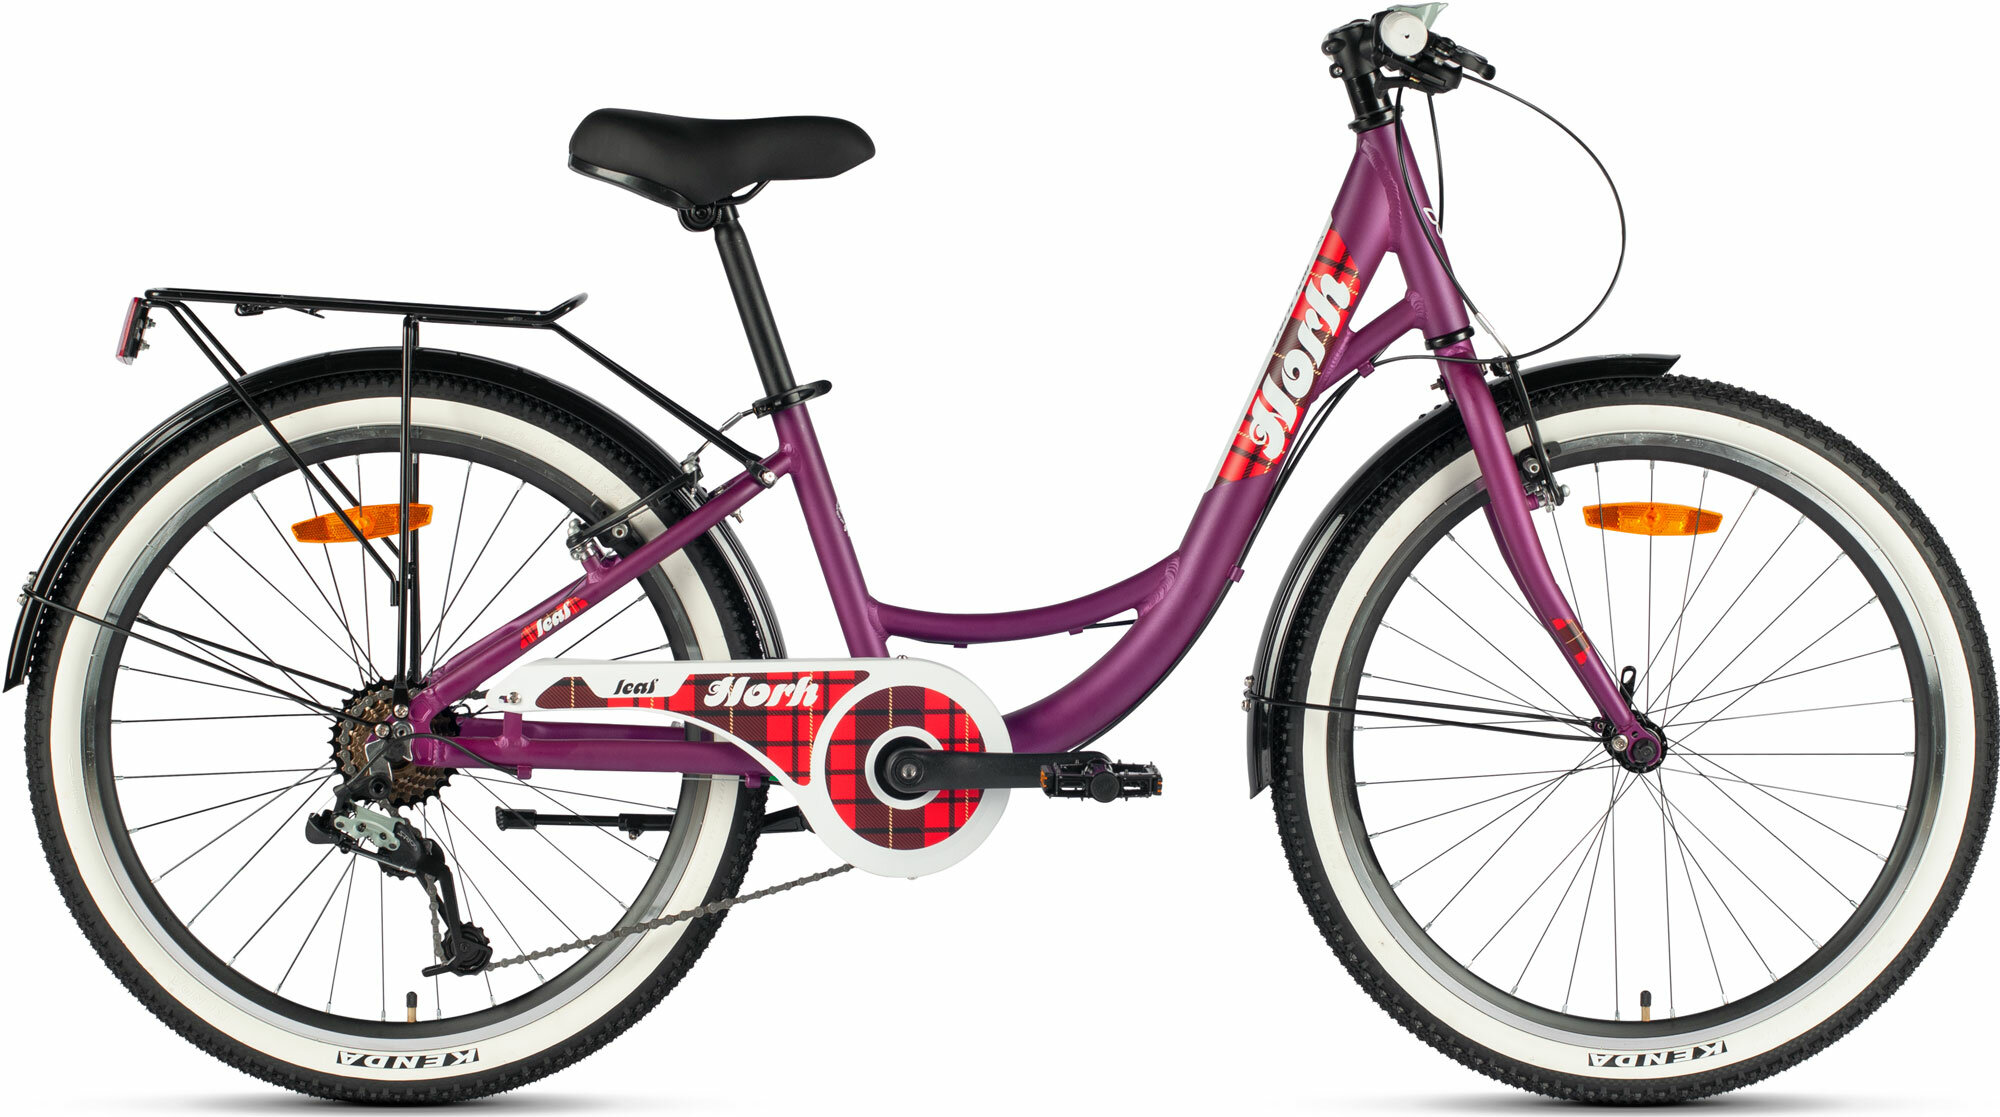 Велосипед городской HORH LEAF 24" (2024), ригид, детский, женский, для девочек, алюминиевая рама, 7 скоростей, дисковые механические тормоза, цвет Dark Purple-Red-White, фиолетовый/красный/белый цвет, размер рамы 12", для роста 130-145 см